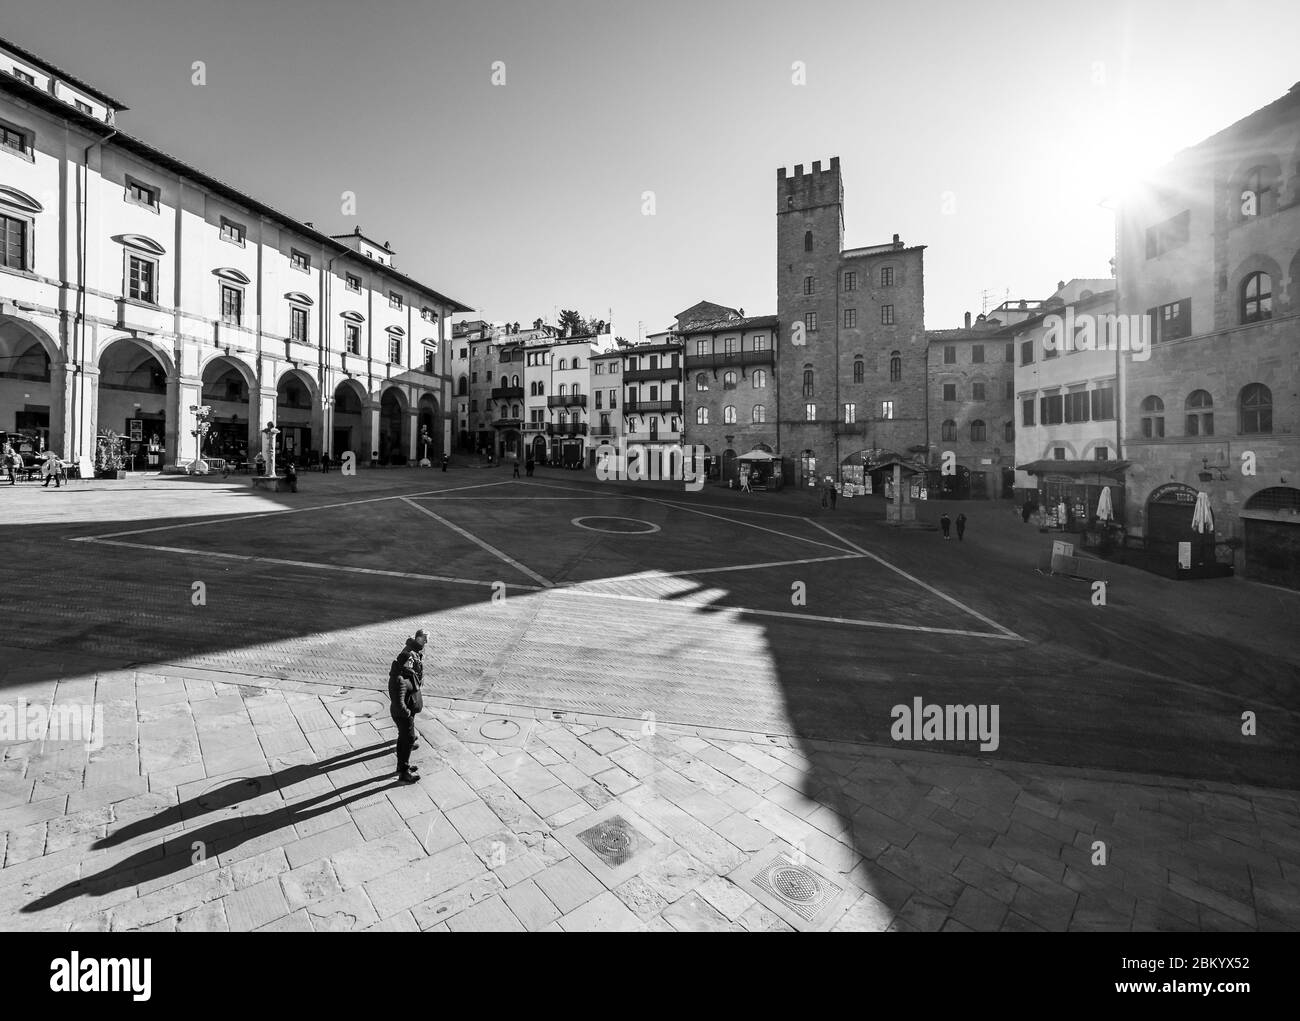 Arezzo (Italien) - die etruskische und Renaissance-Stadt der Toskana. Hier das historische Zentrum. Stockfoto